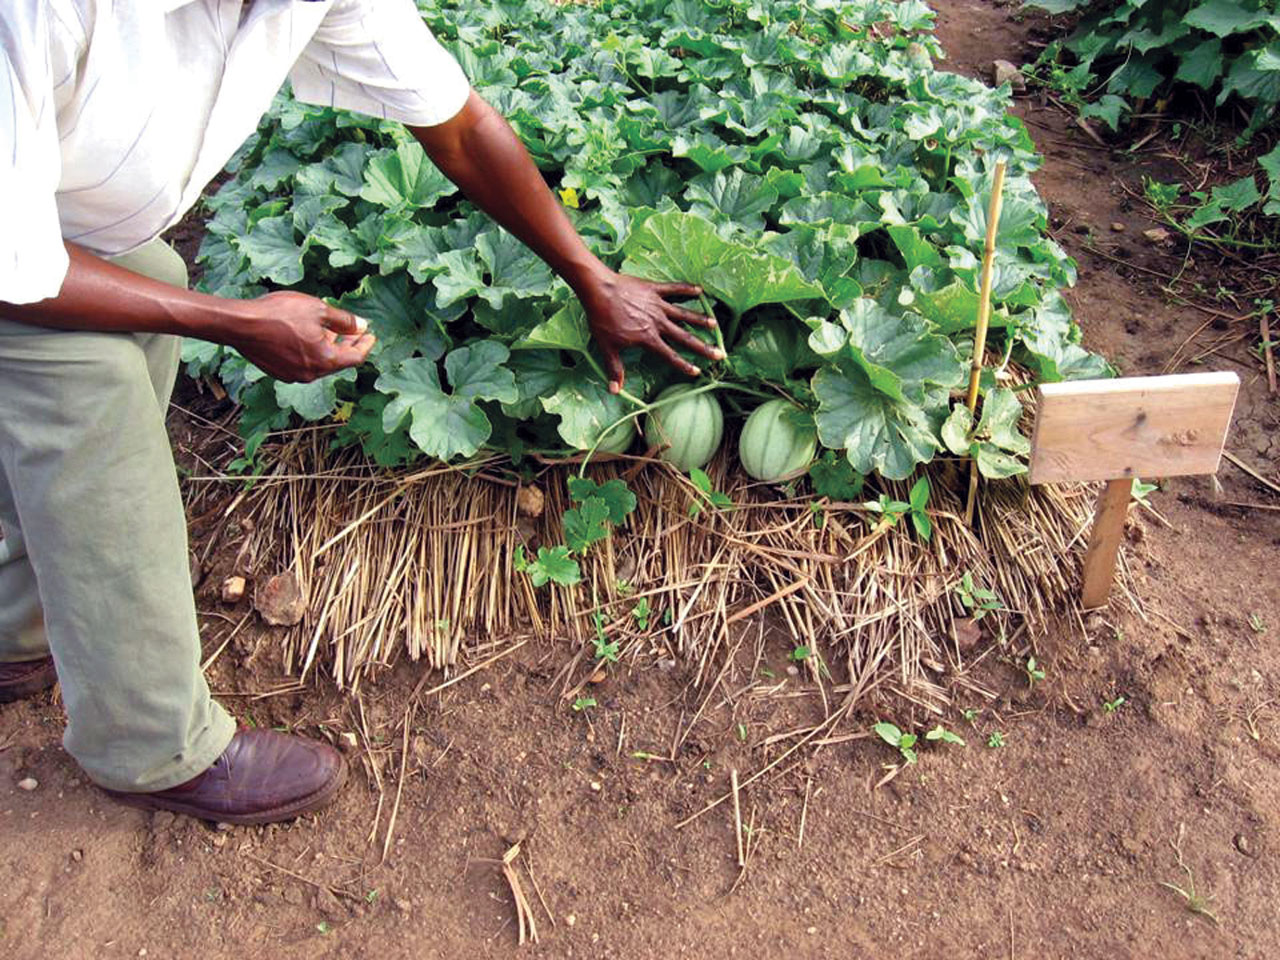 Congo Farm Project